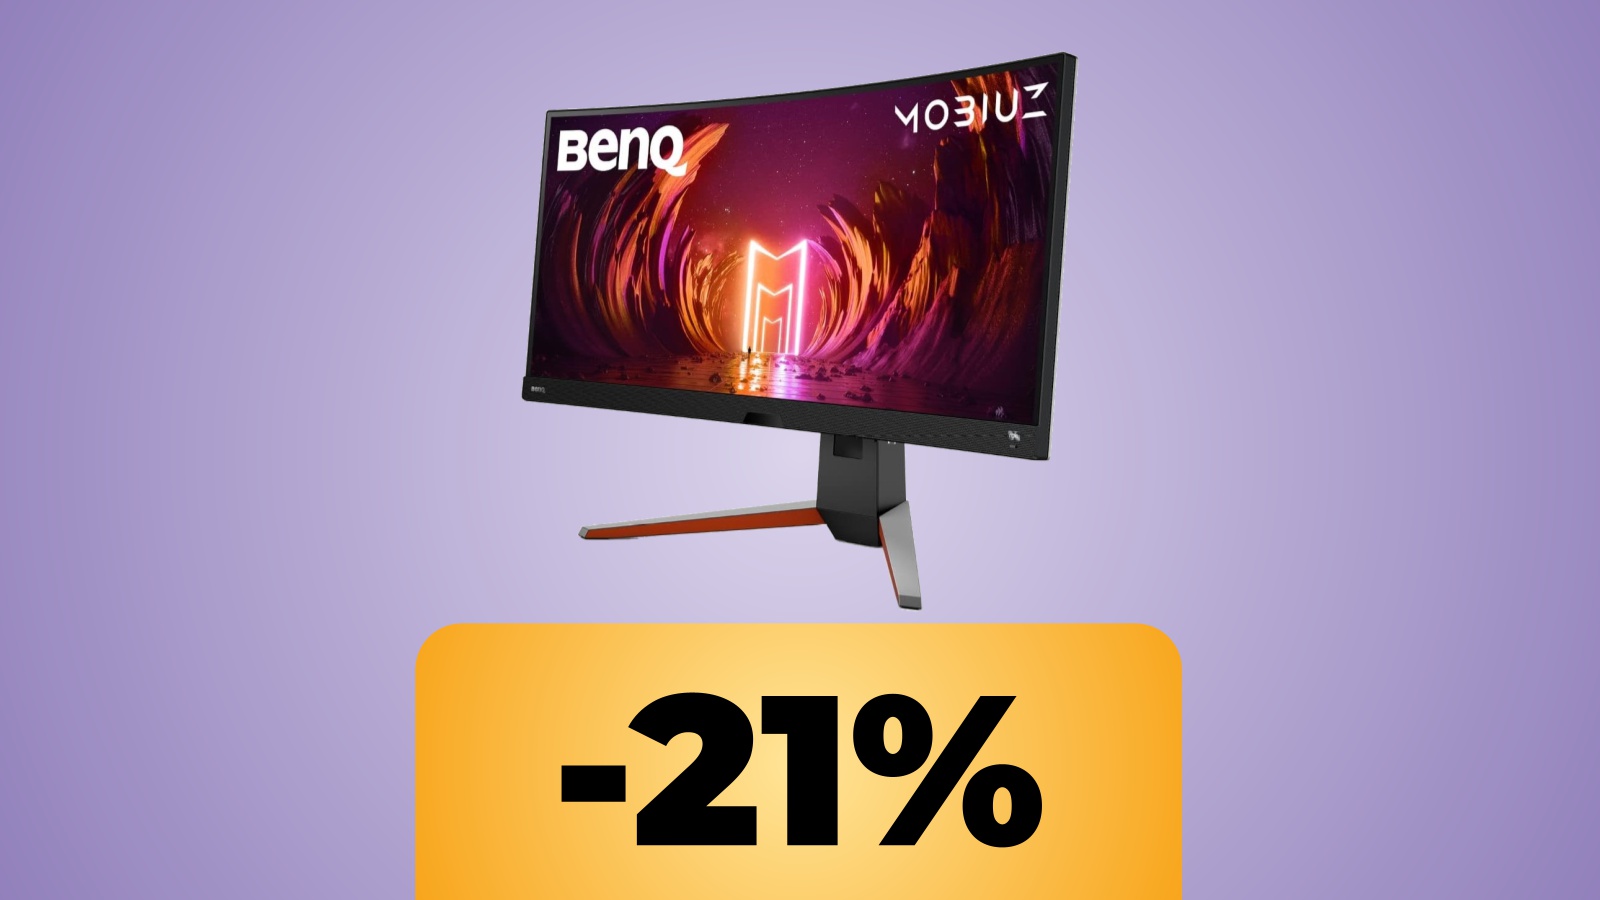 Il monitor BenQ MOBIUZ curvo da 34 pollici Ultrawide in 2K e 144 Hz e sotto la percentuale dello sconto di Amazon